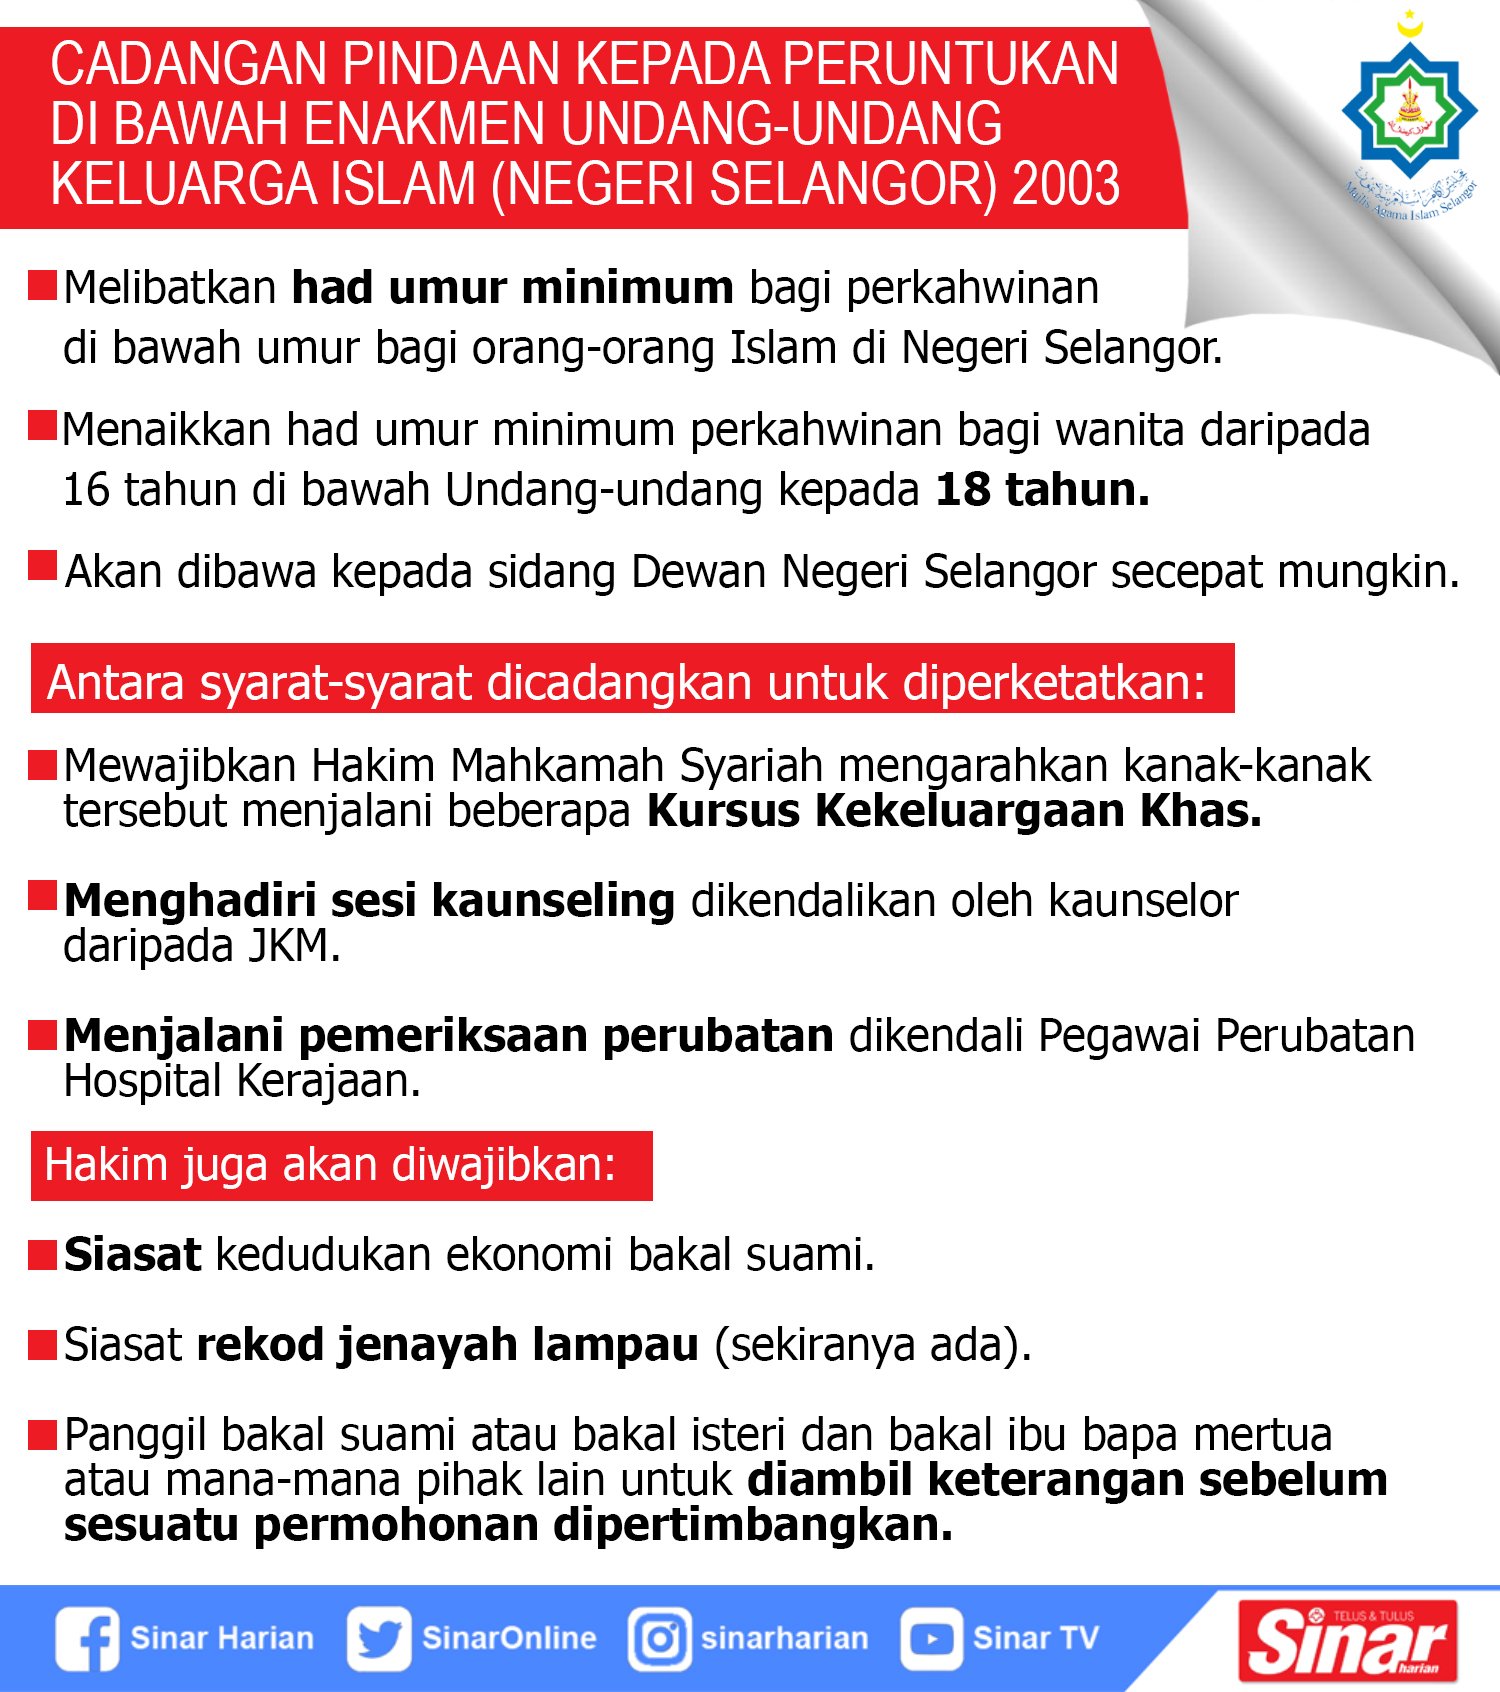 Sinaronline On Twitter Cadangan Pindaan Kepada Peruntukan Di Bawah Enakmen Undang Undang Keluarga Islam Negeri Selangor 2003